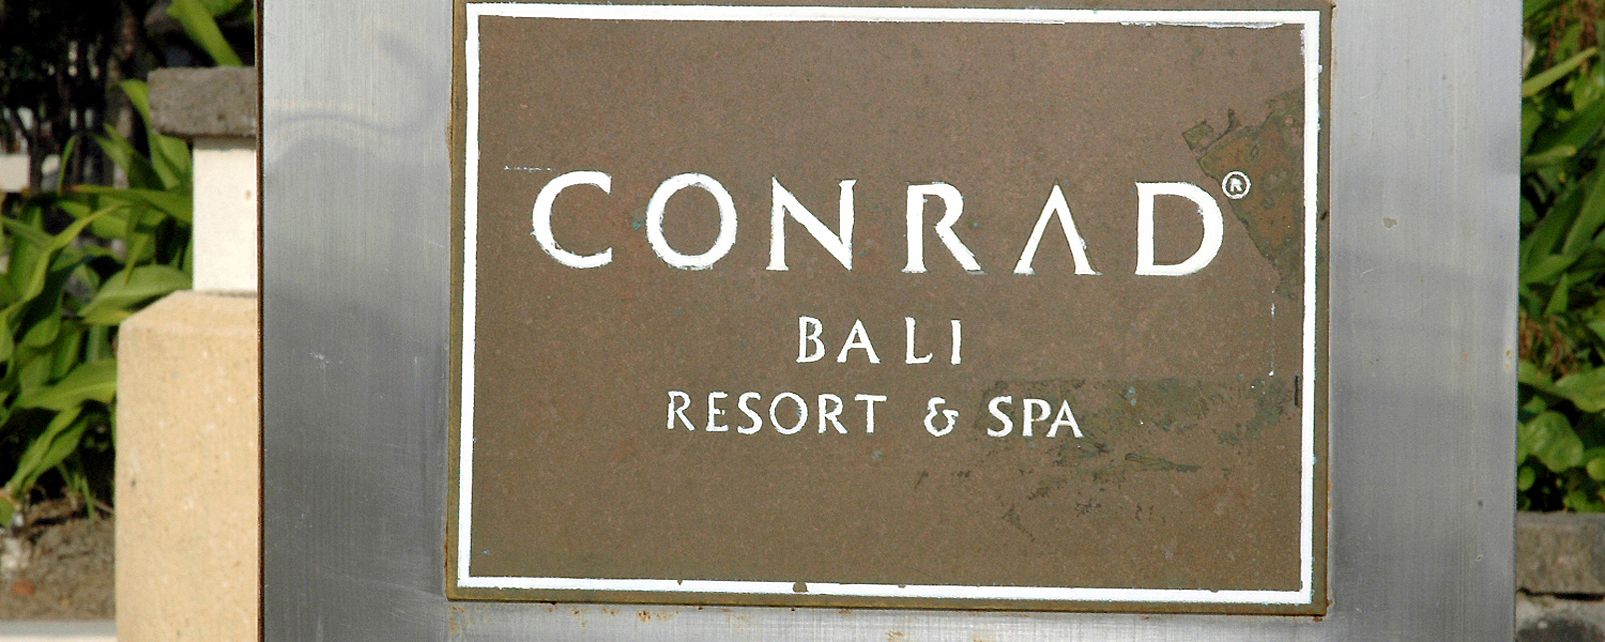 Hotel Conrad Bali